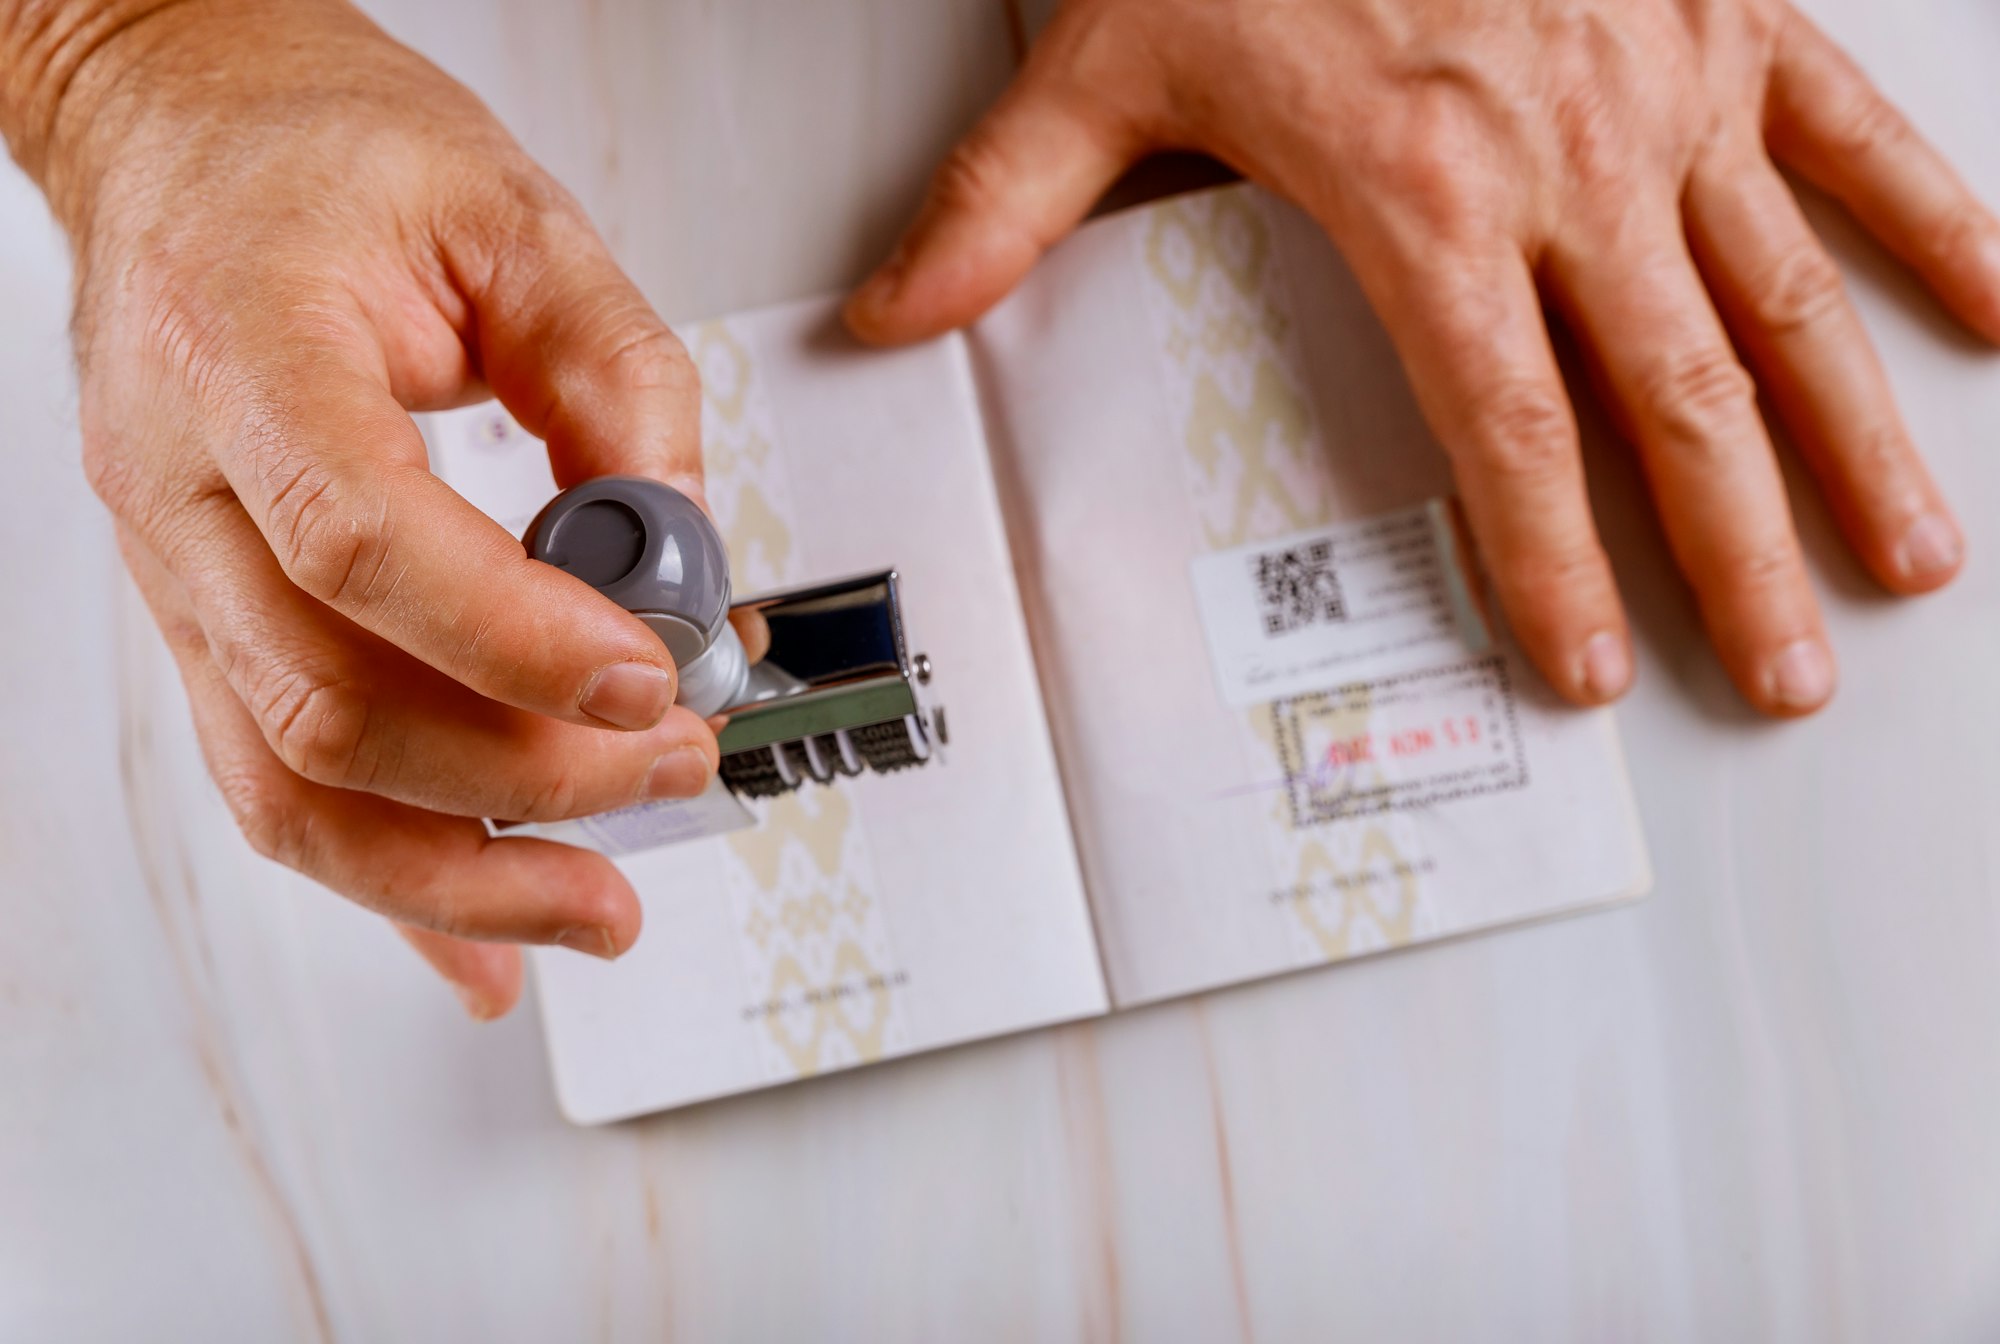 Сотрудник пограничного контроля ставит штамп на странице паспорта с марками паспорта